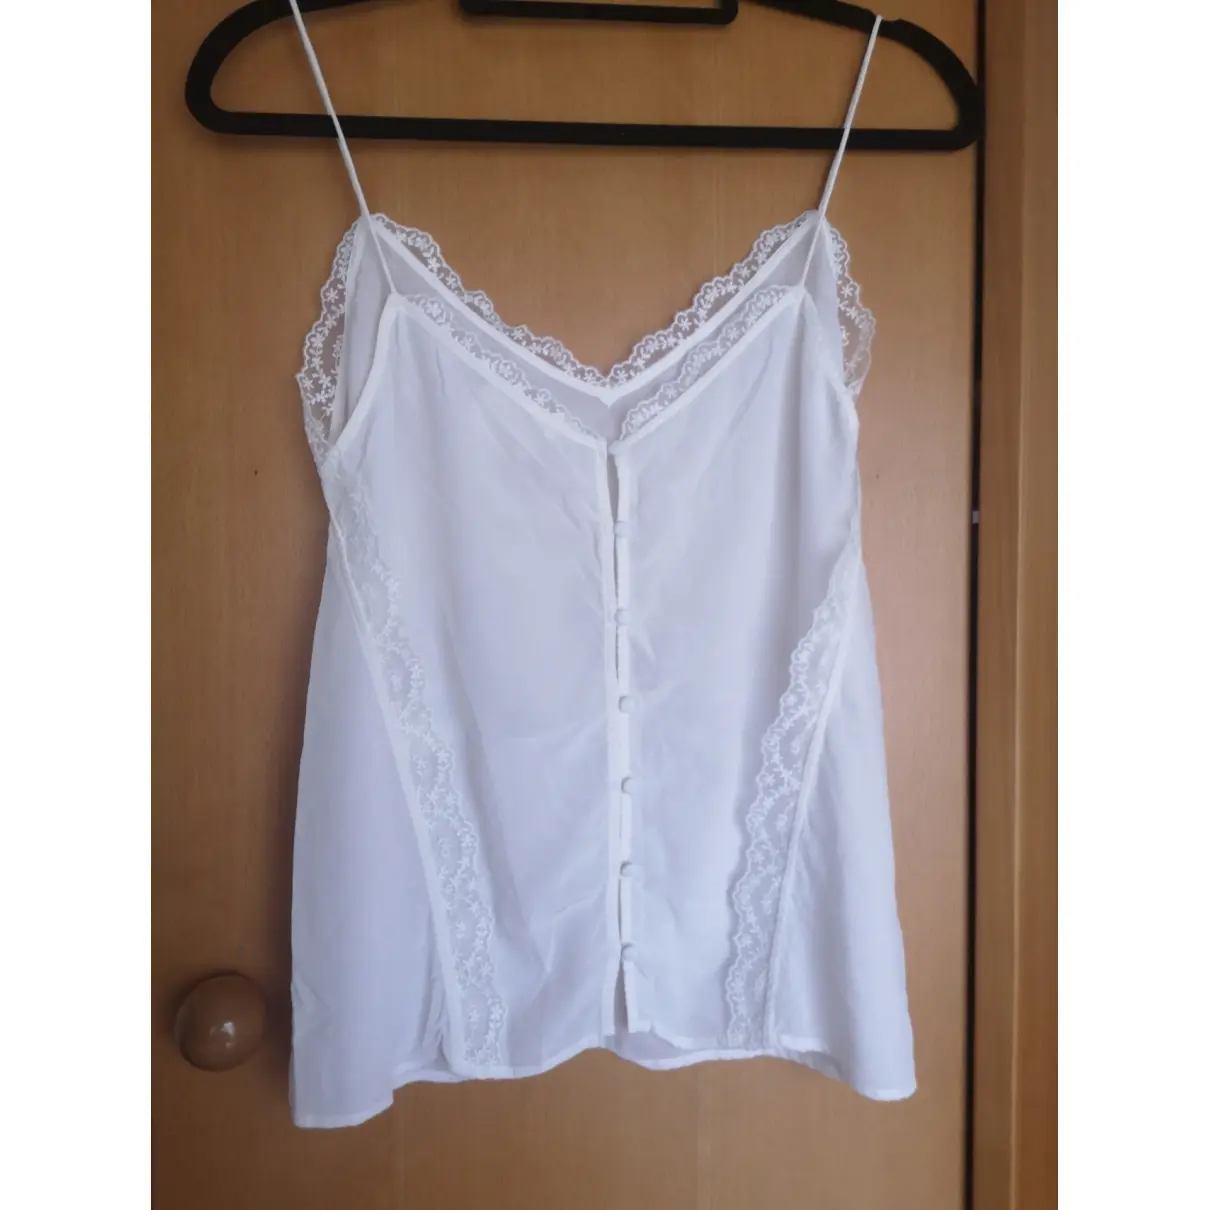 Buy Sézane Spring Summer 2019 silk camisole online